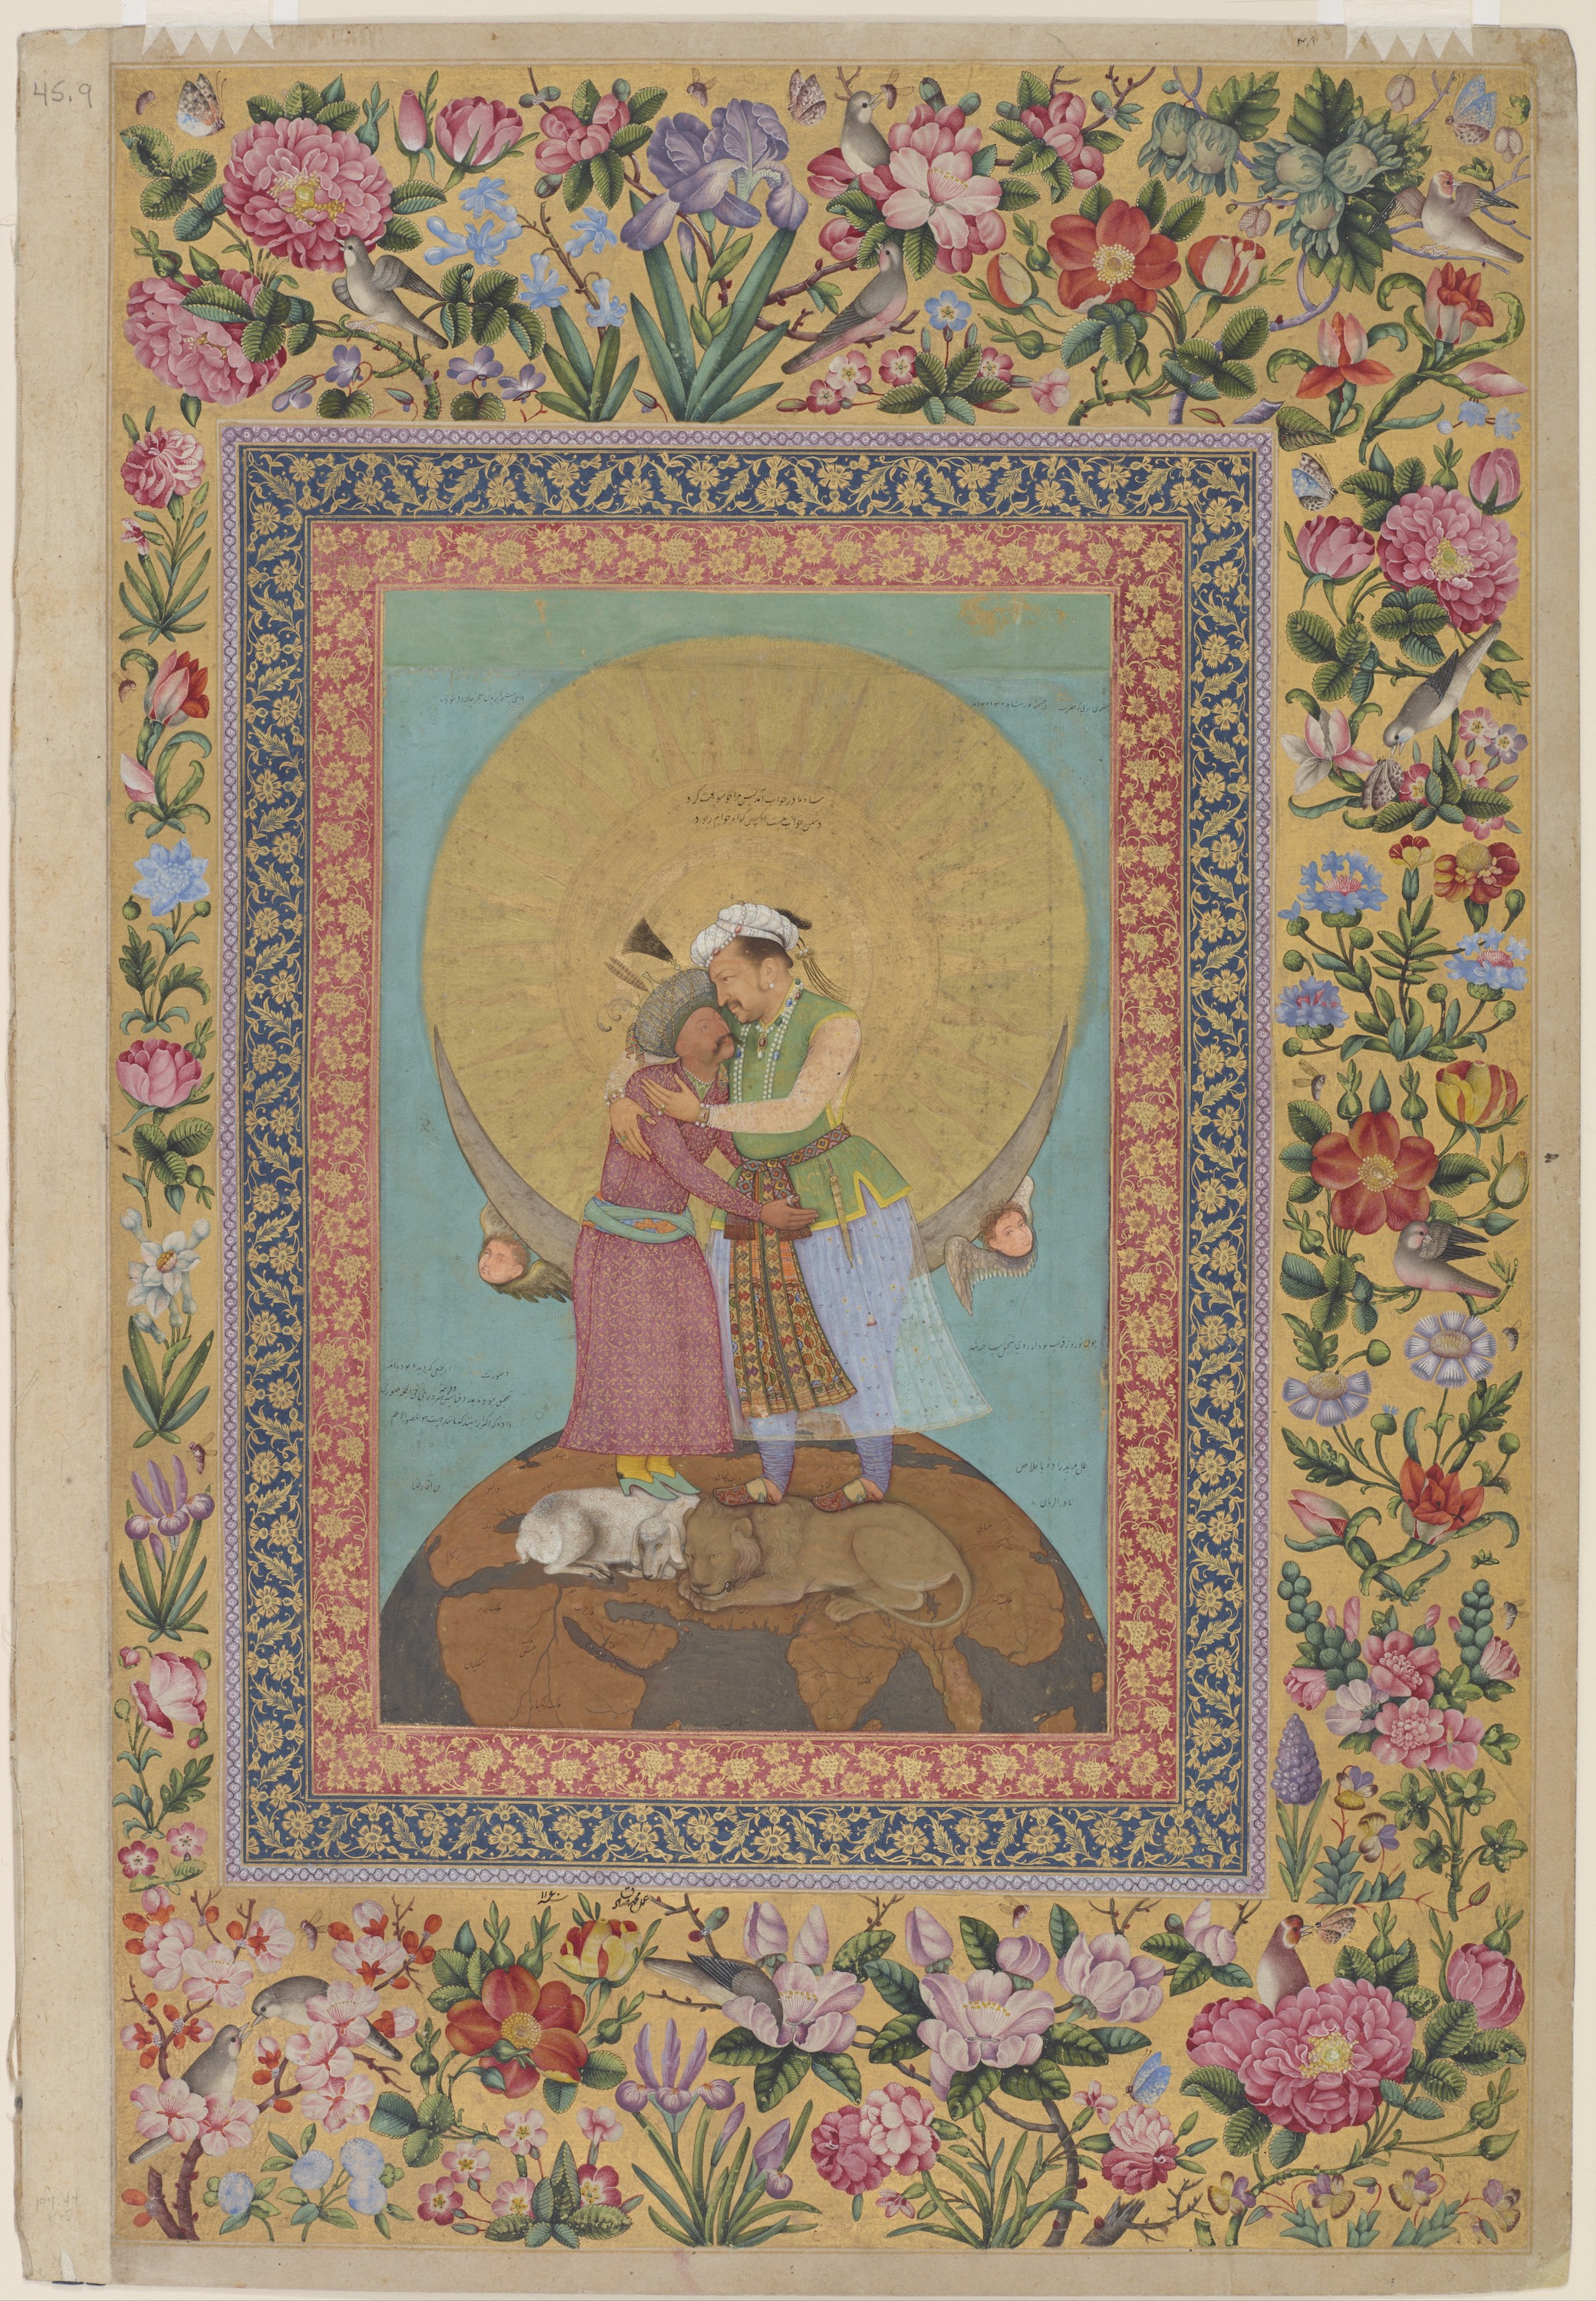 ジャハンギル天皇とペルシアのシャー・アッバスの寓意的表現 by Abu al-Hasan - 1618年頃；余白1747-48 - 9 3/8 x 6 1/16インチ 